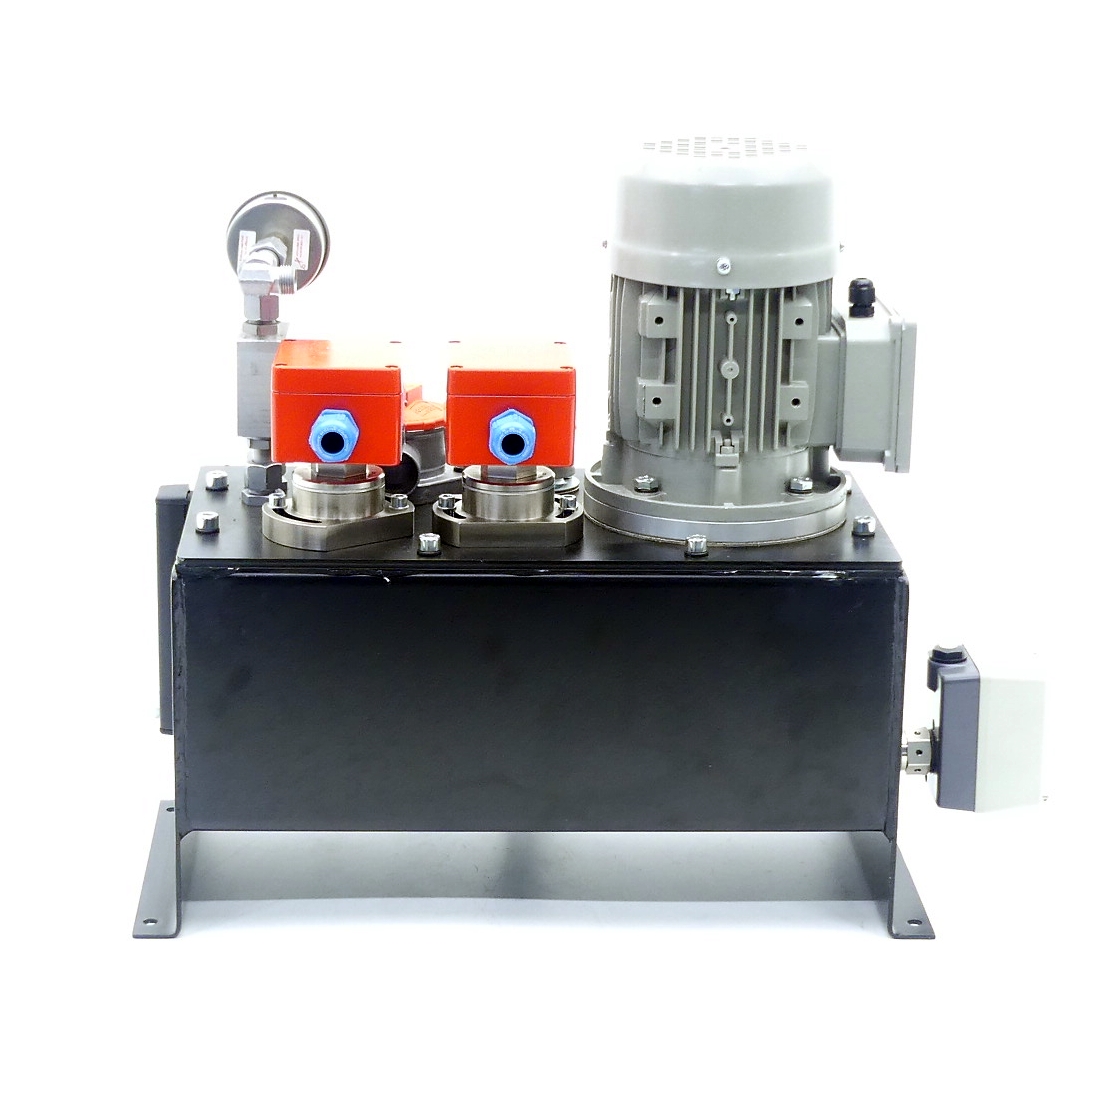 Hydraulic Unit 18Liter-3ccm-0,37KW 100207280 